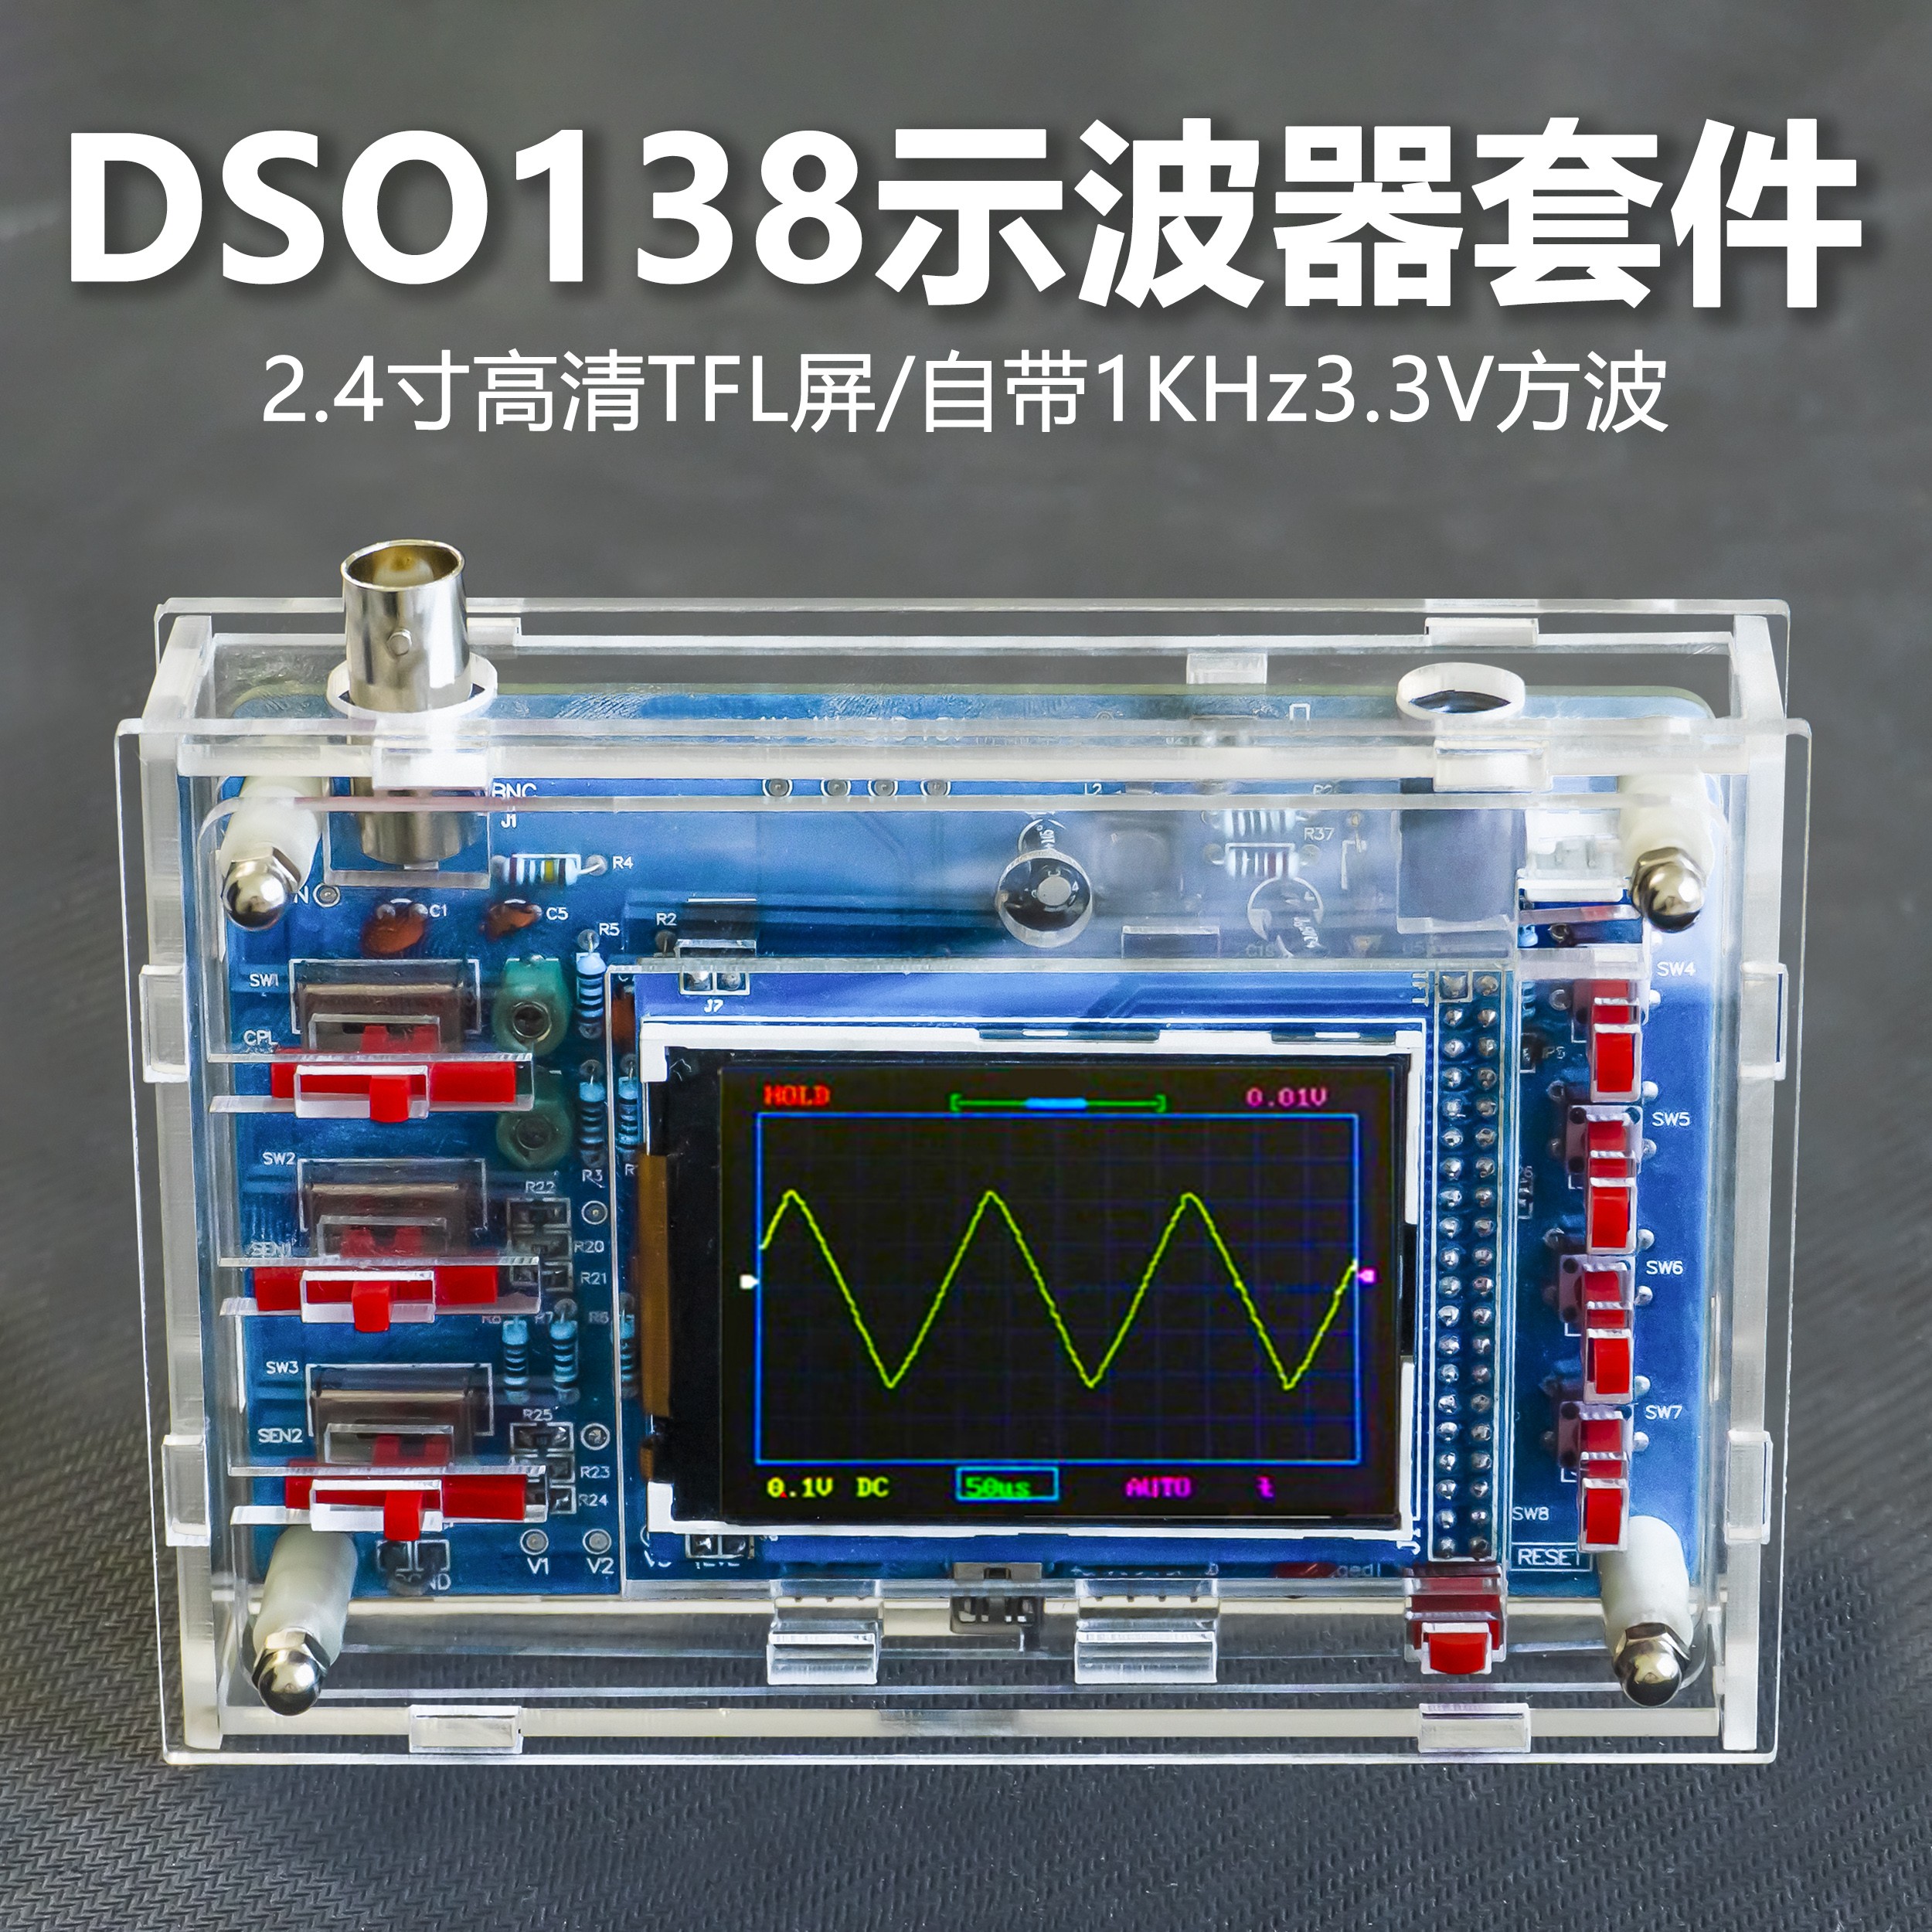 DSO138数字示波器套件DIY单片机电子电路板组装焊接散件TJ-56-61